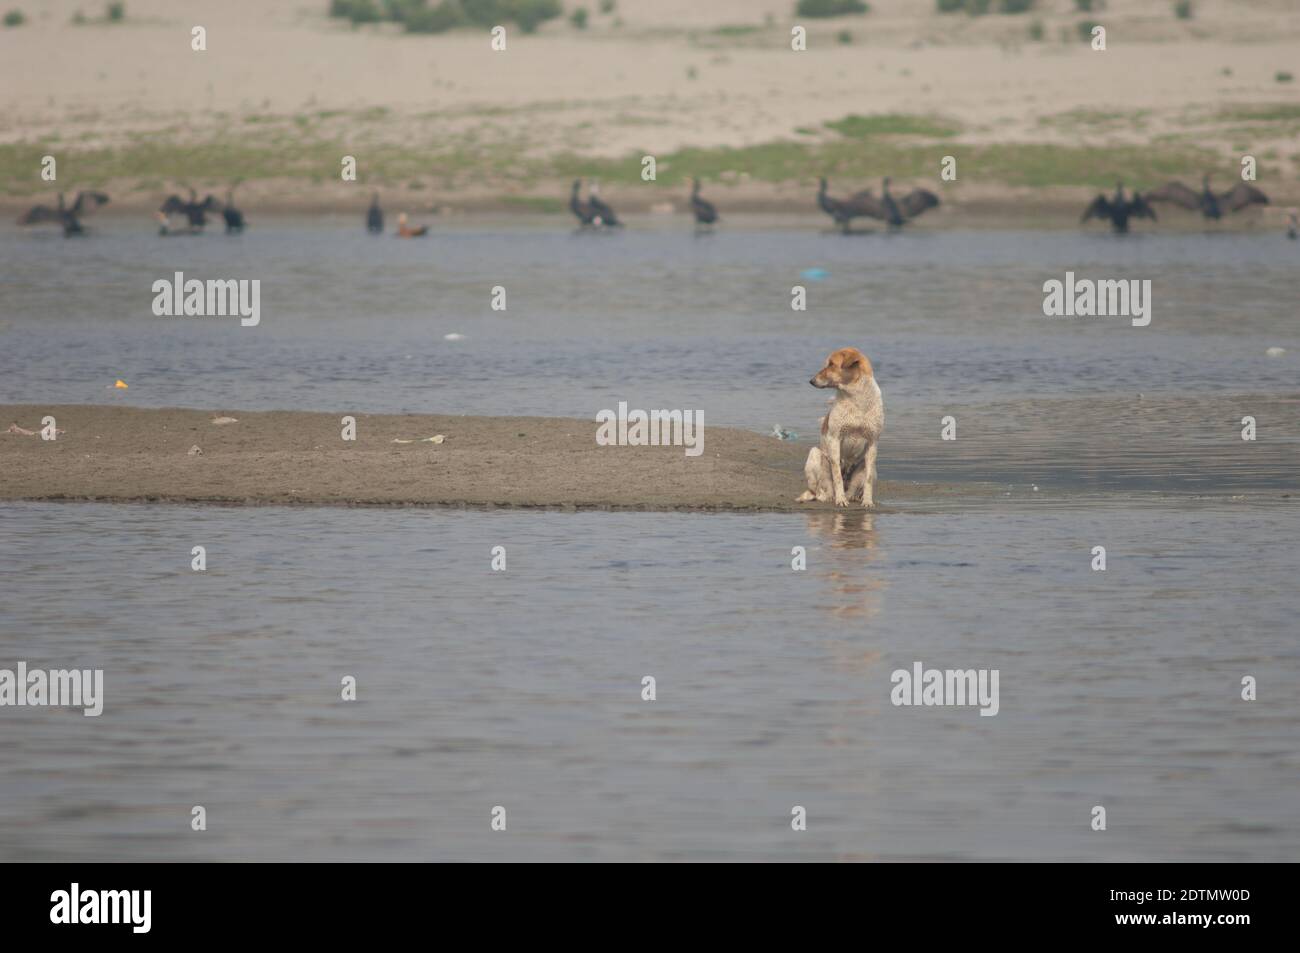 Cane feriale Canis lupus familiaris nel fiume Yamuna. Agra. Utttar Pradesh. India. Foto Stock